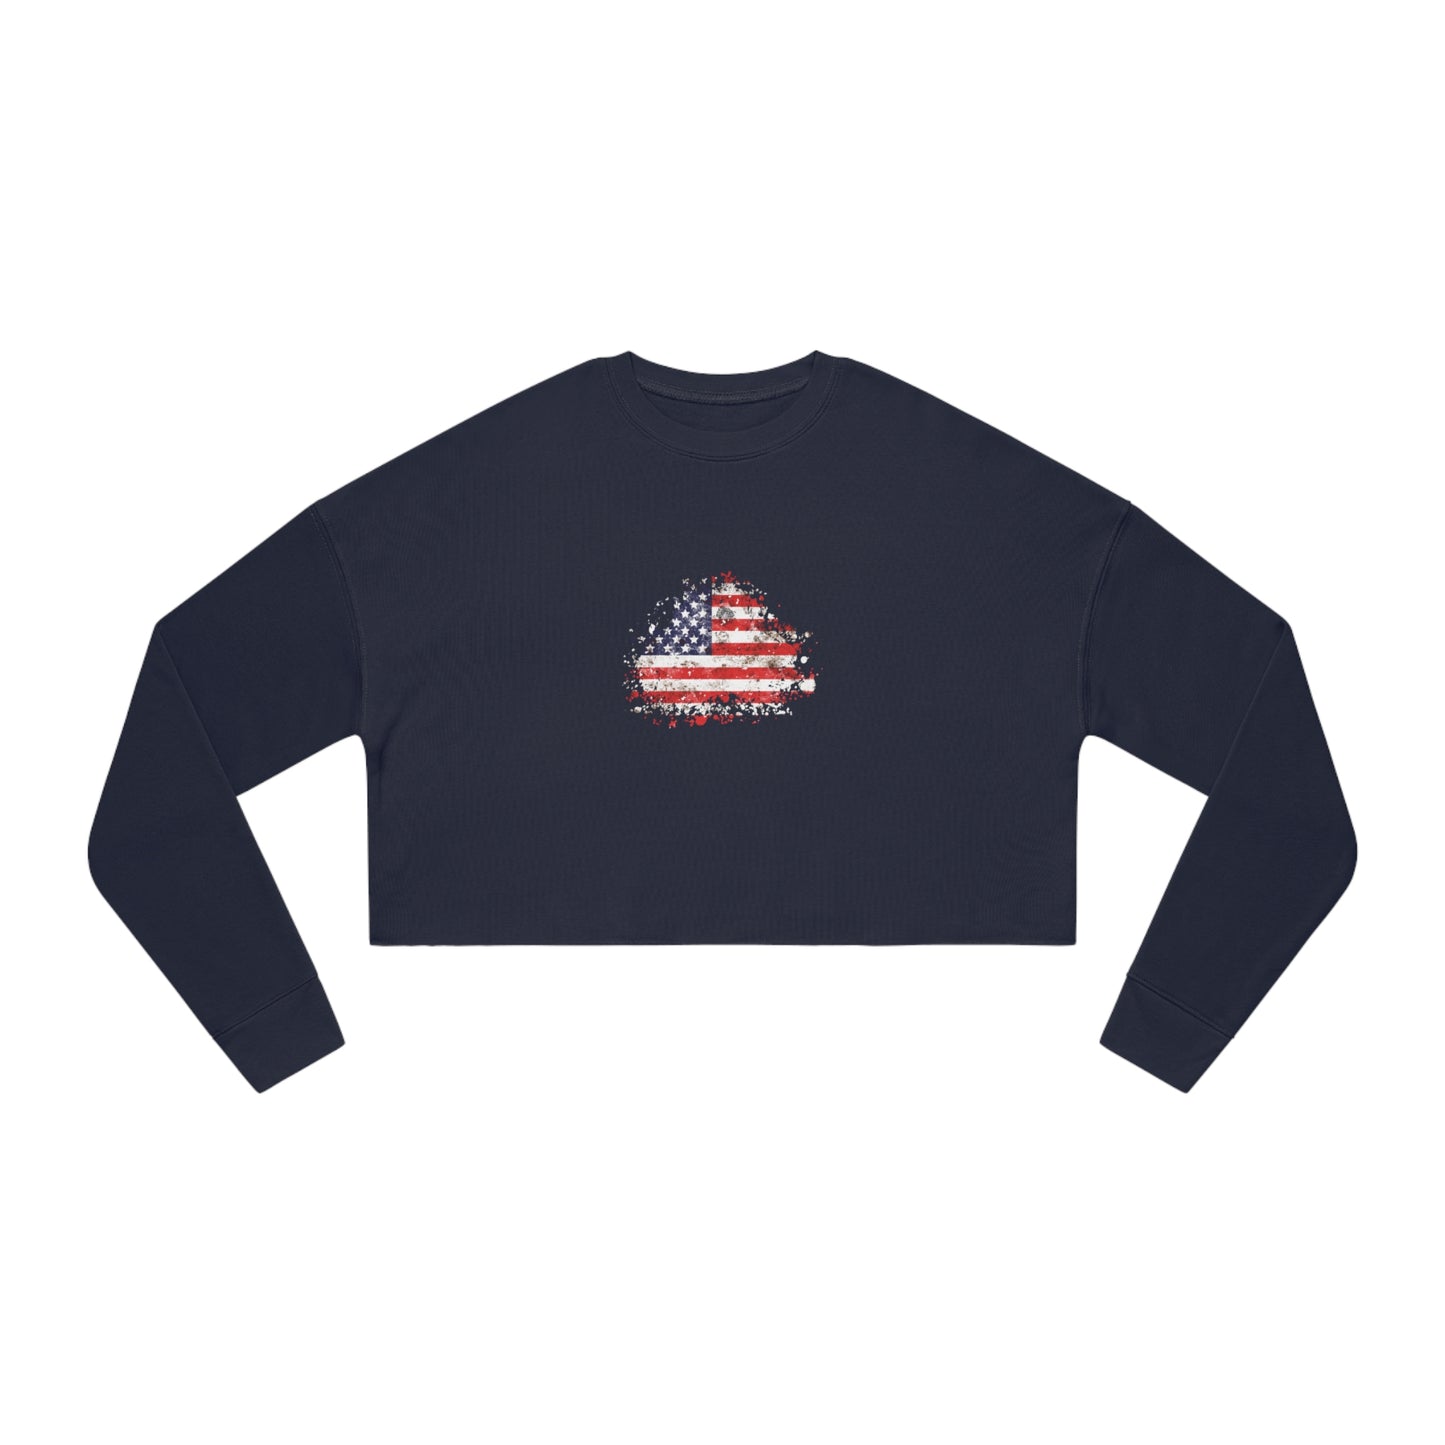 American Flag Sweatshirt Women's in navy front